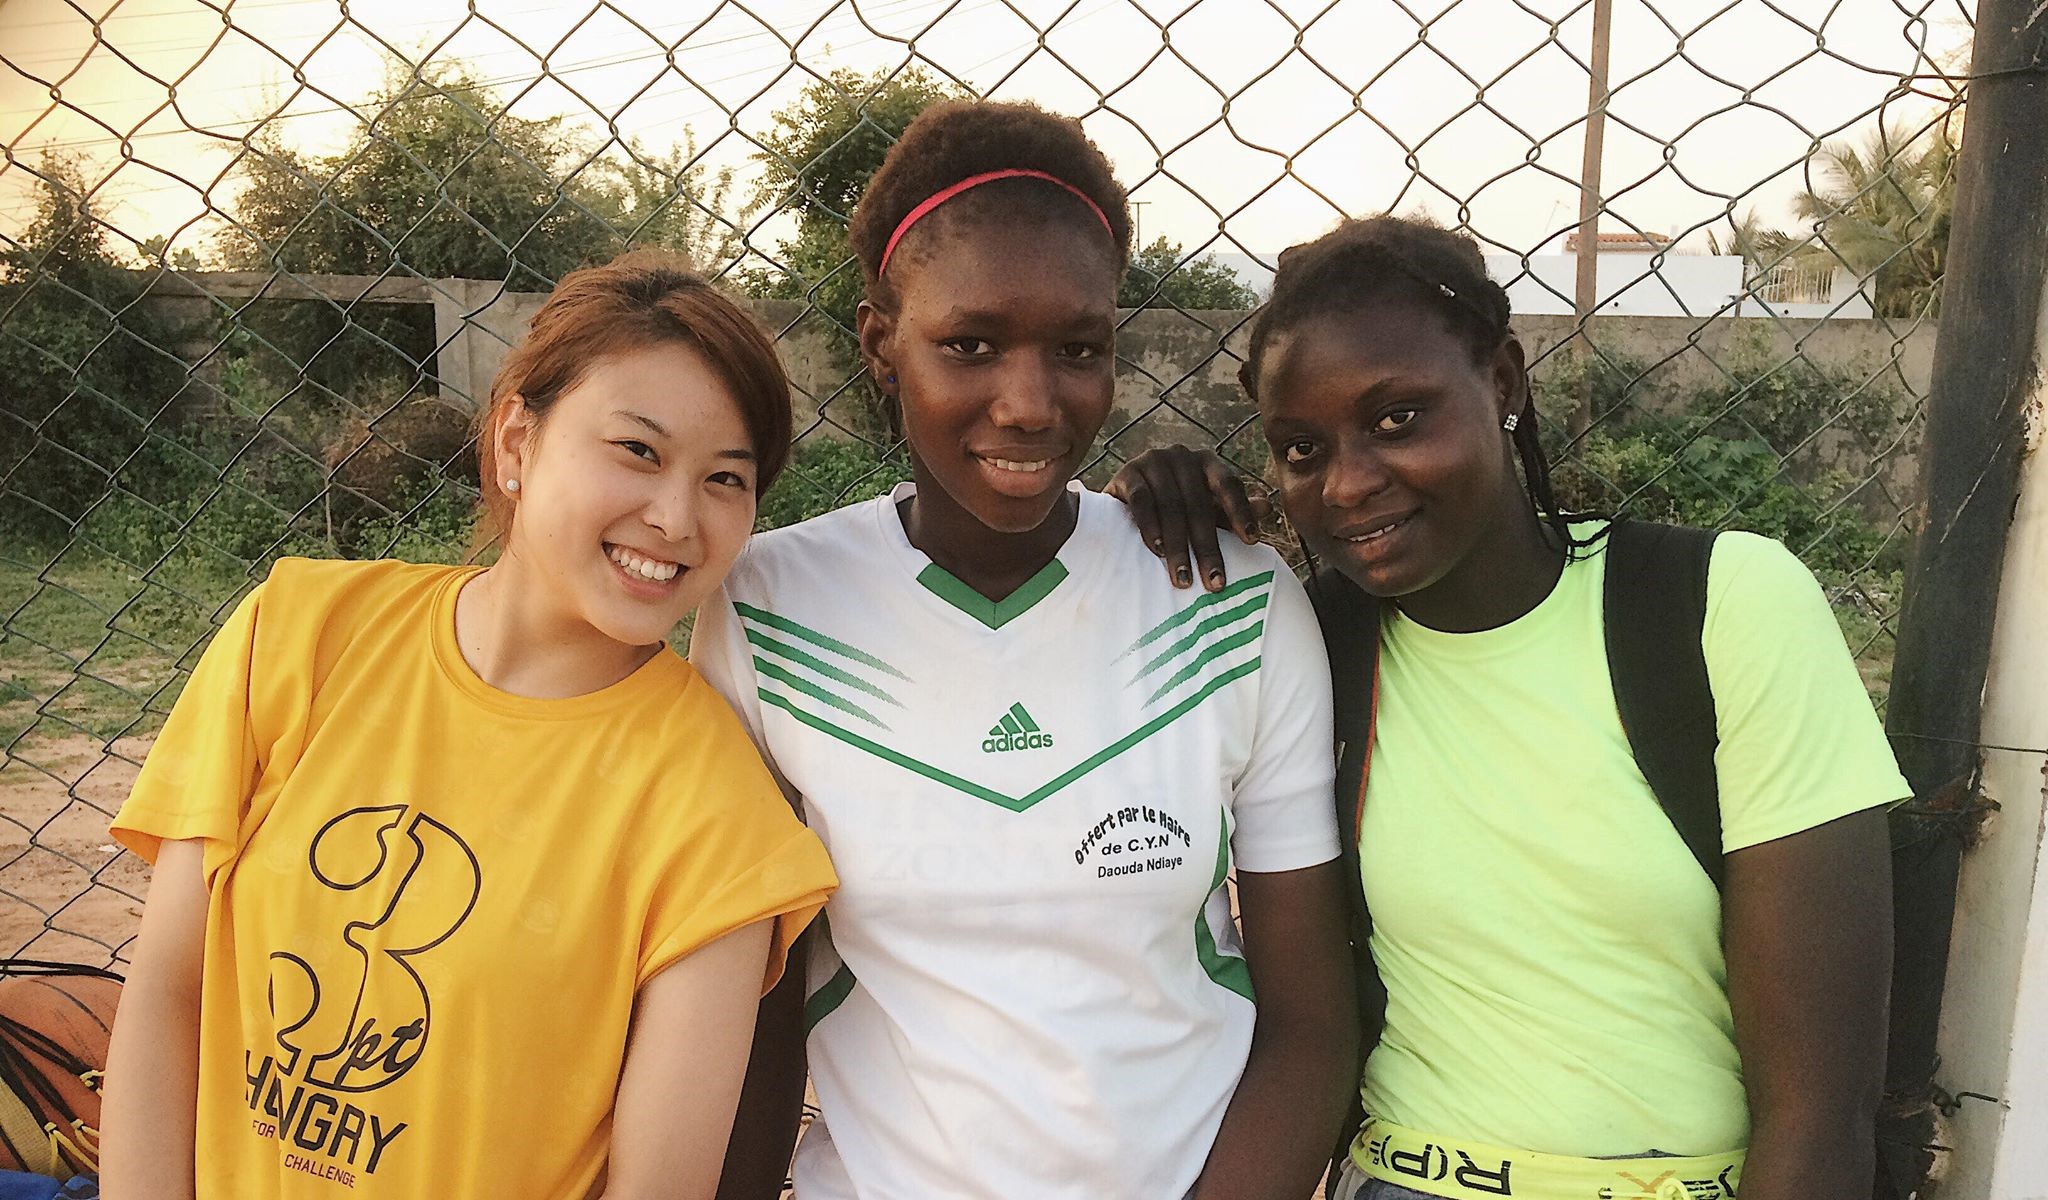 ボール片手に単身アフリカへ。20歳女子大生の飛び込みバスケ旅！